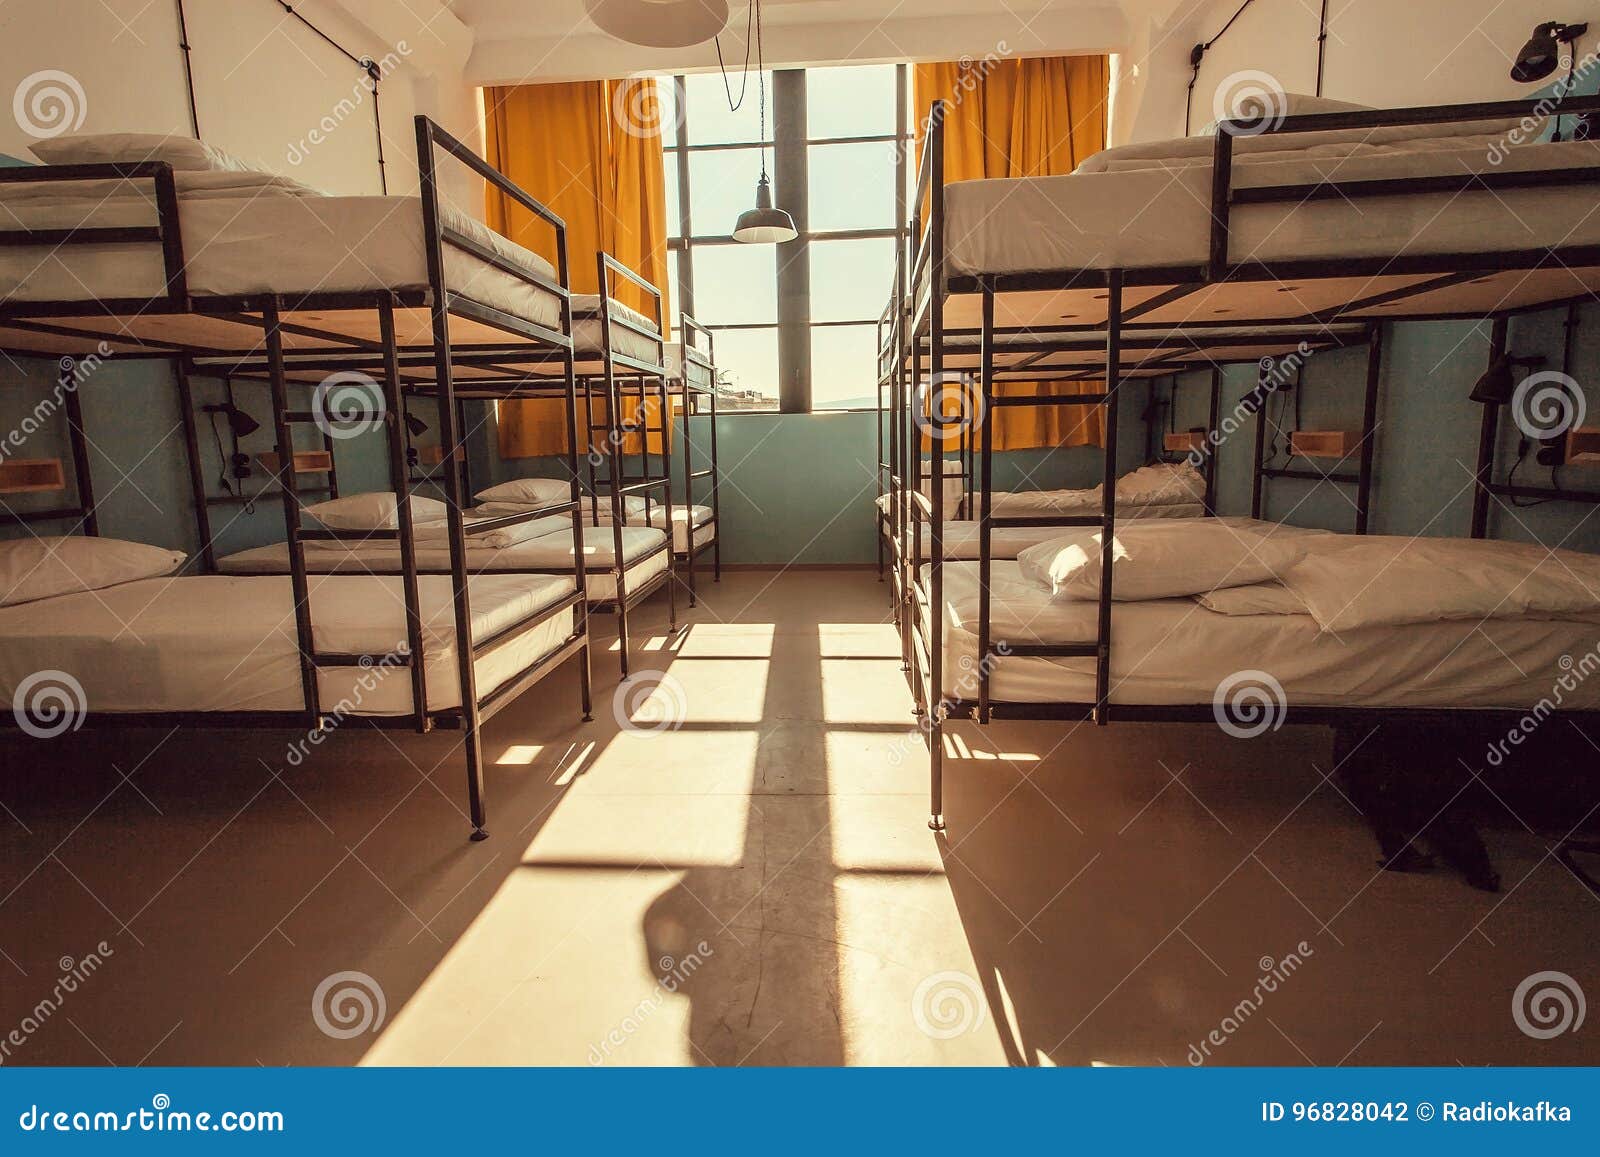 Двухэтажное общежитие. Тбилиси хостел Backpackers. Двухэтажное общежитие с 4 комнатами. Финские модульные общежития внутри.